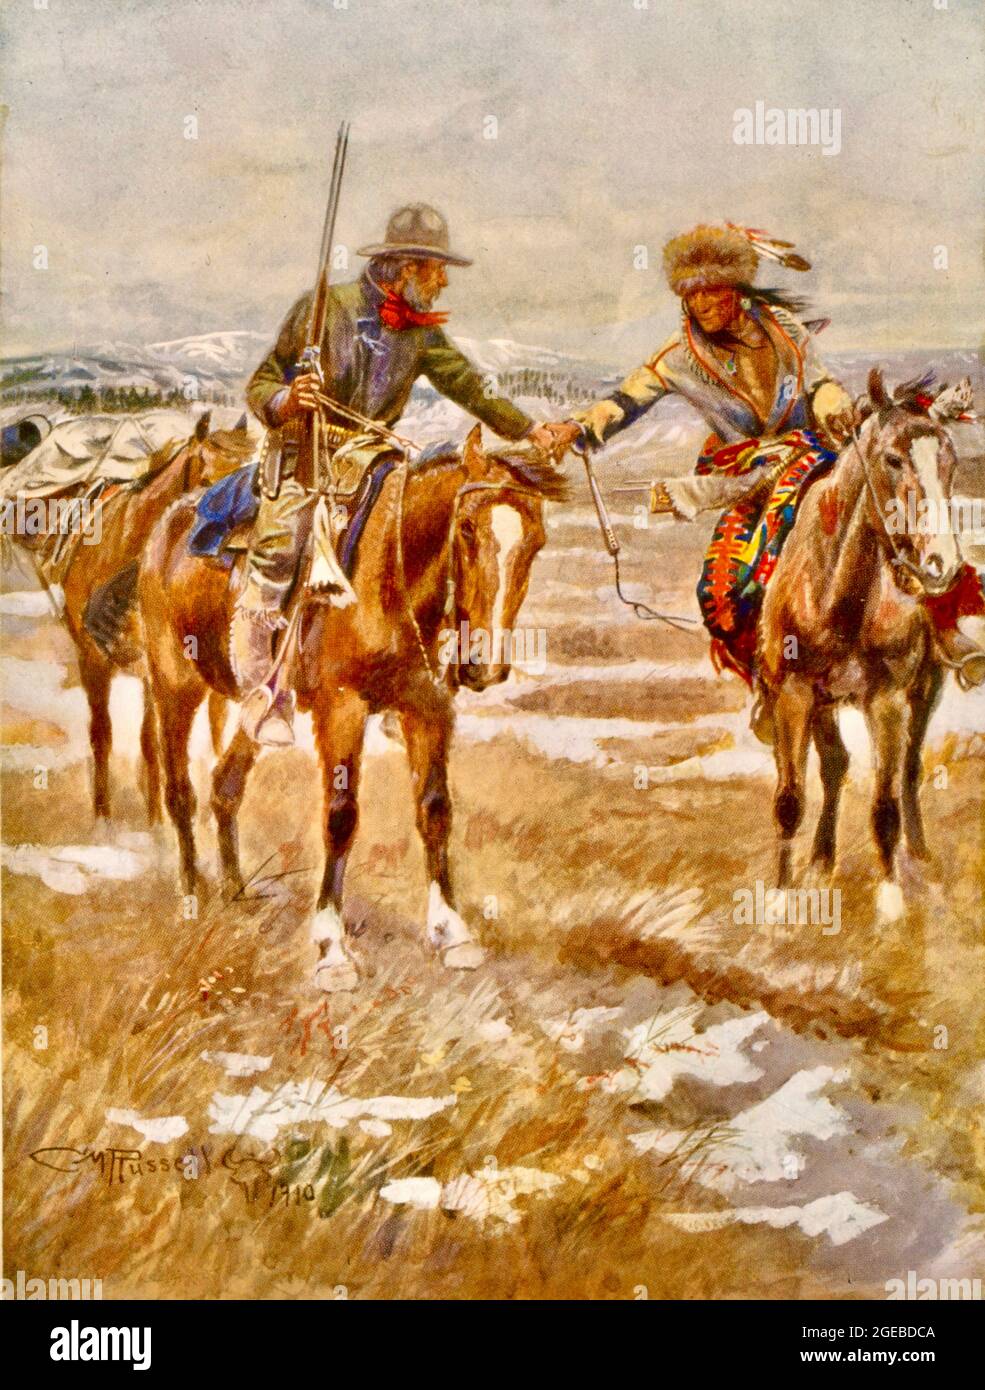 Charles Marion Russell Kunstwerk mit dem Titel The Meeting - Euro-amerikanischer Mann, hält Gewehr, zu Pferd, Hände schüttelnd mit Indianer auf dem Pferd. Stockfoto